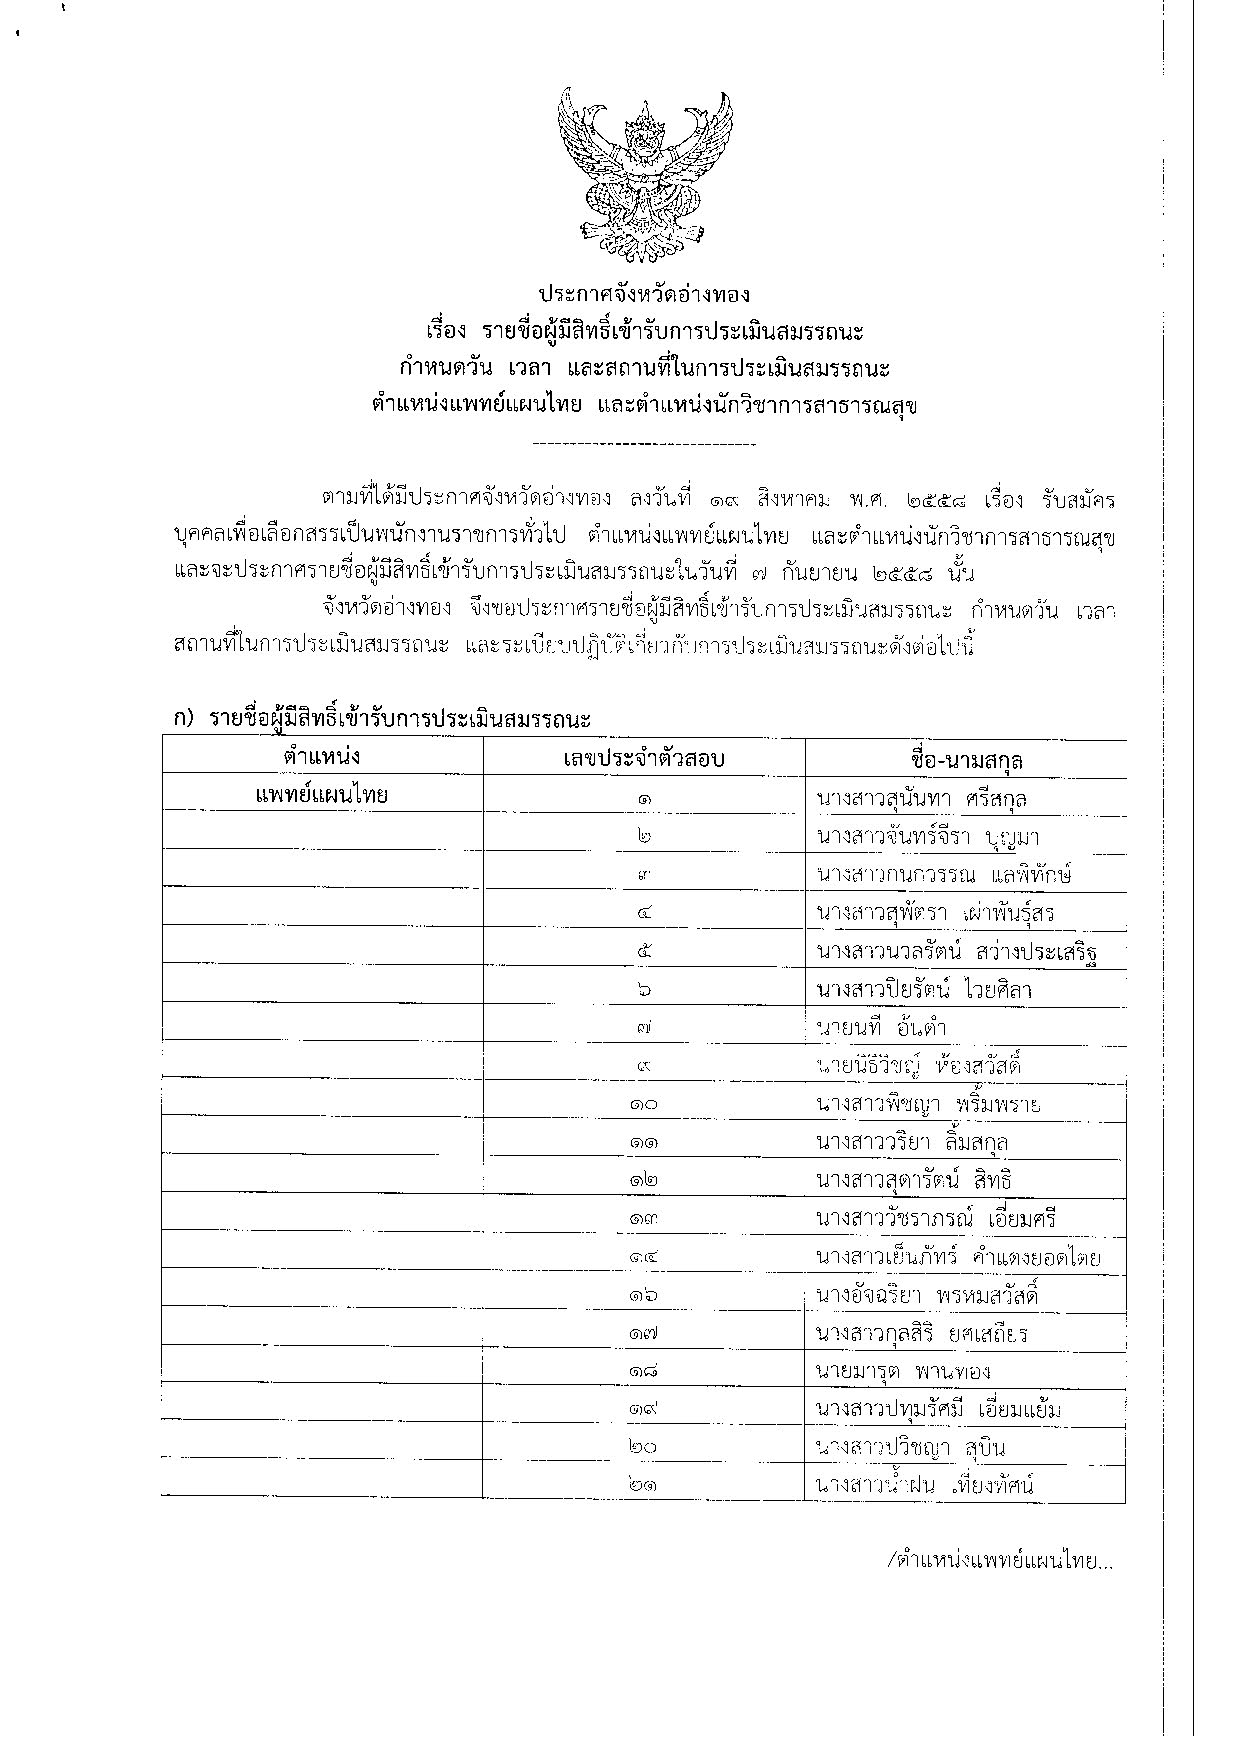 รายชื่อผู้มีสิทธิ์สอบ-แพทย์แผนไทยและนักวิชาการสาธารณสุข